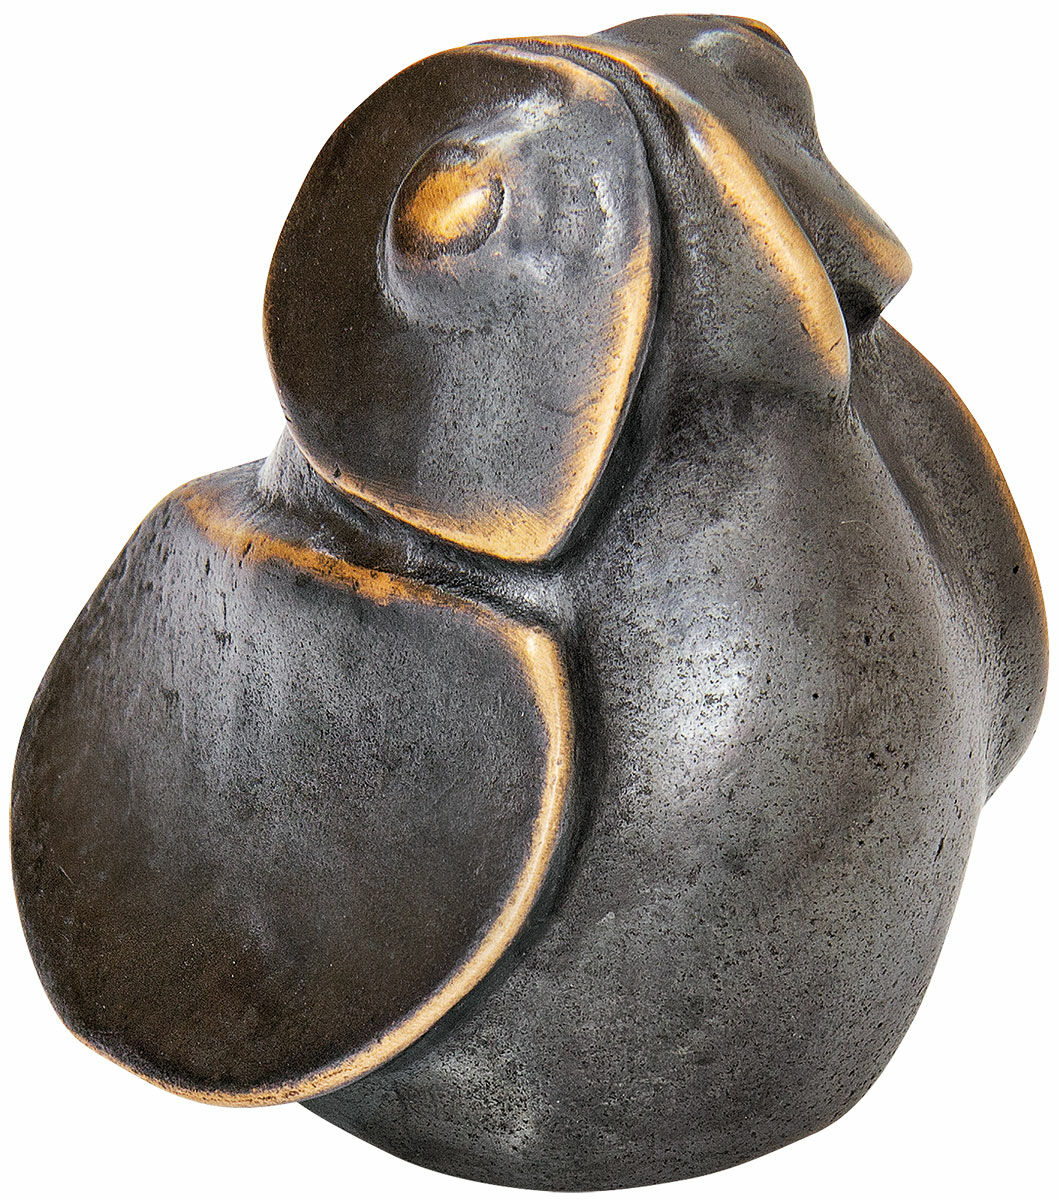 Miniatuursculptuur "Uil", brons von Herbert Fricke